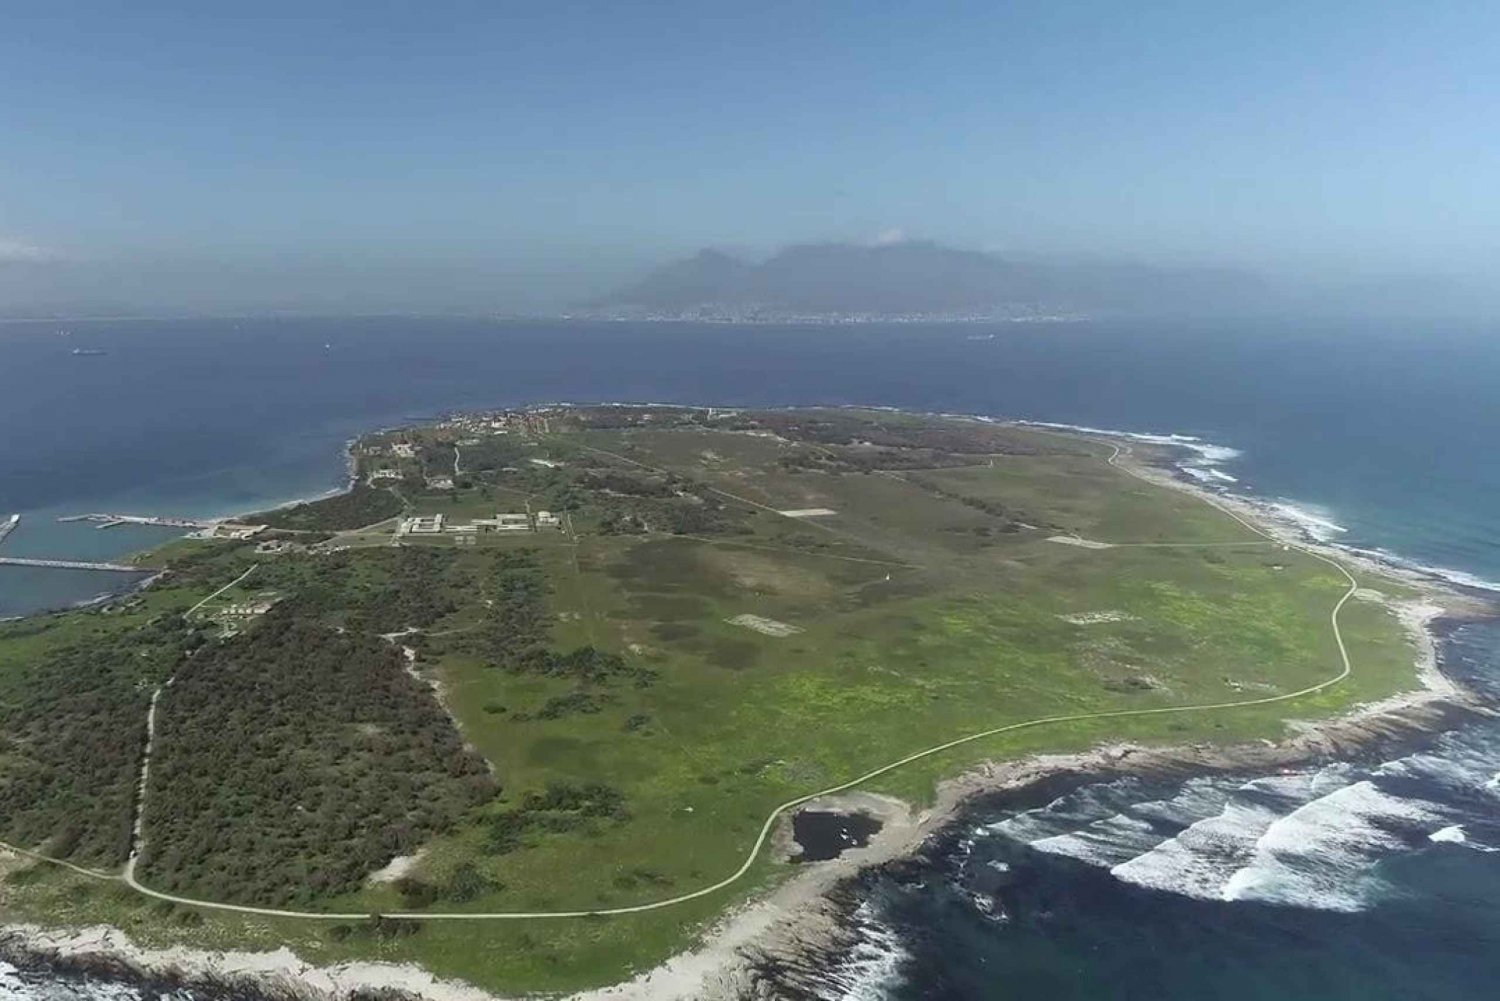 Robben Island Wycieczka półdniowa z biletem zarezerwowanym z wyprzedzeniem (s)